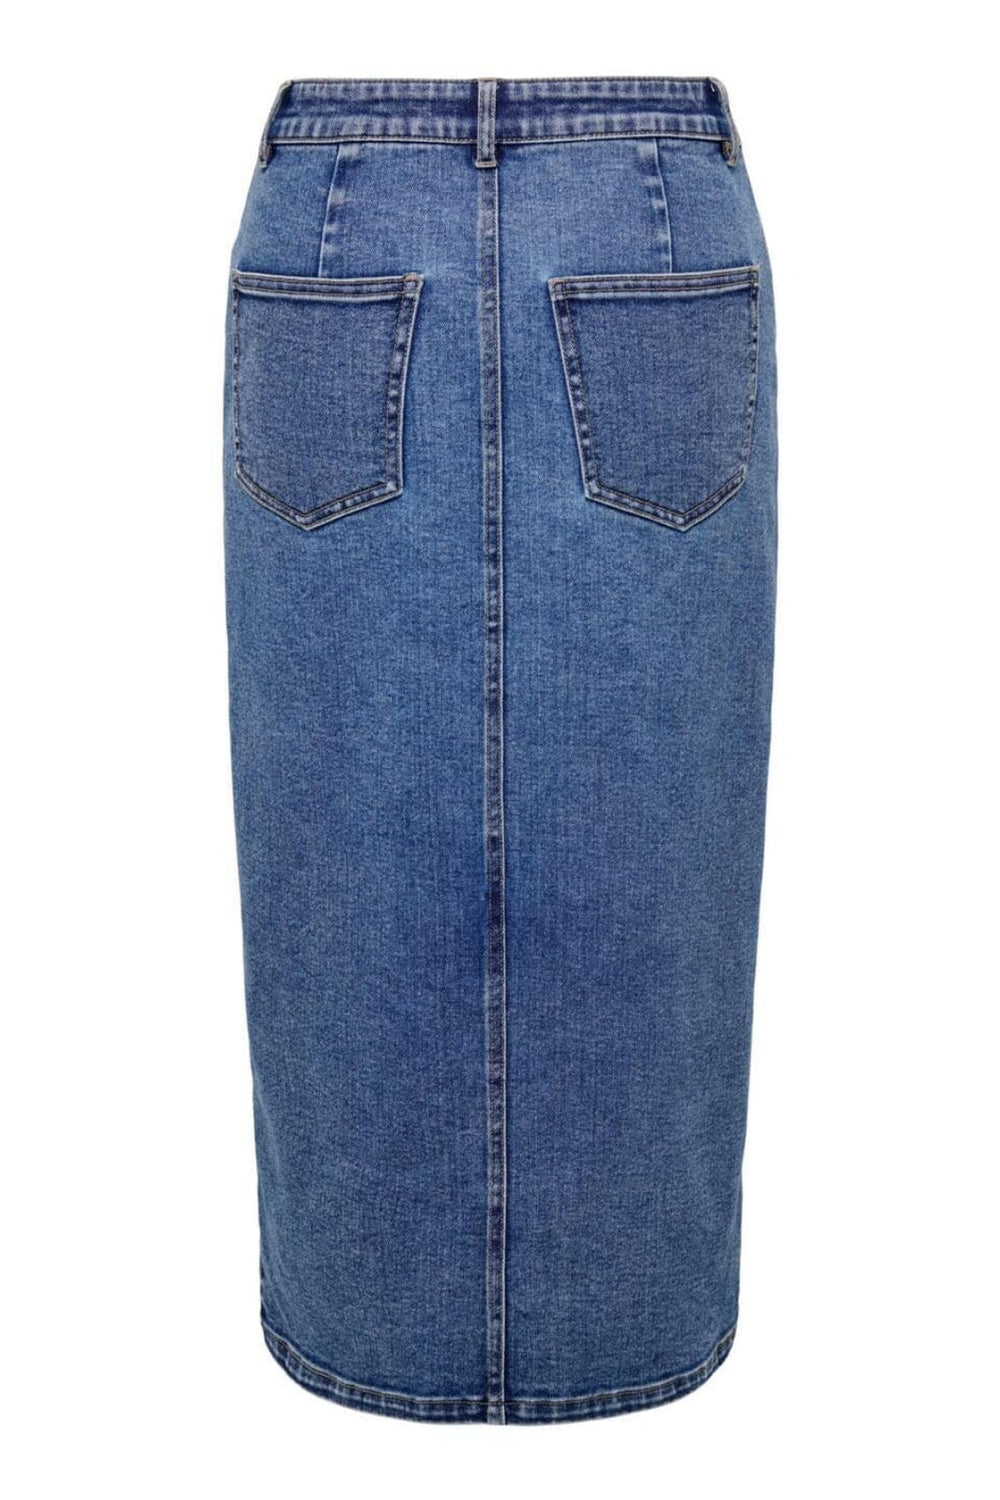 Only - Onlsiri Front Slit Skirt Gua - 4507660 Medium Blue Denim Nederdele 